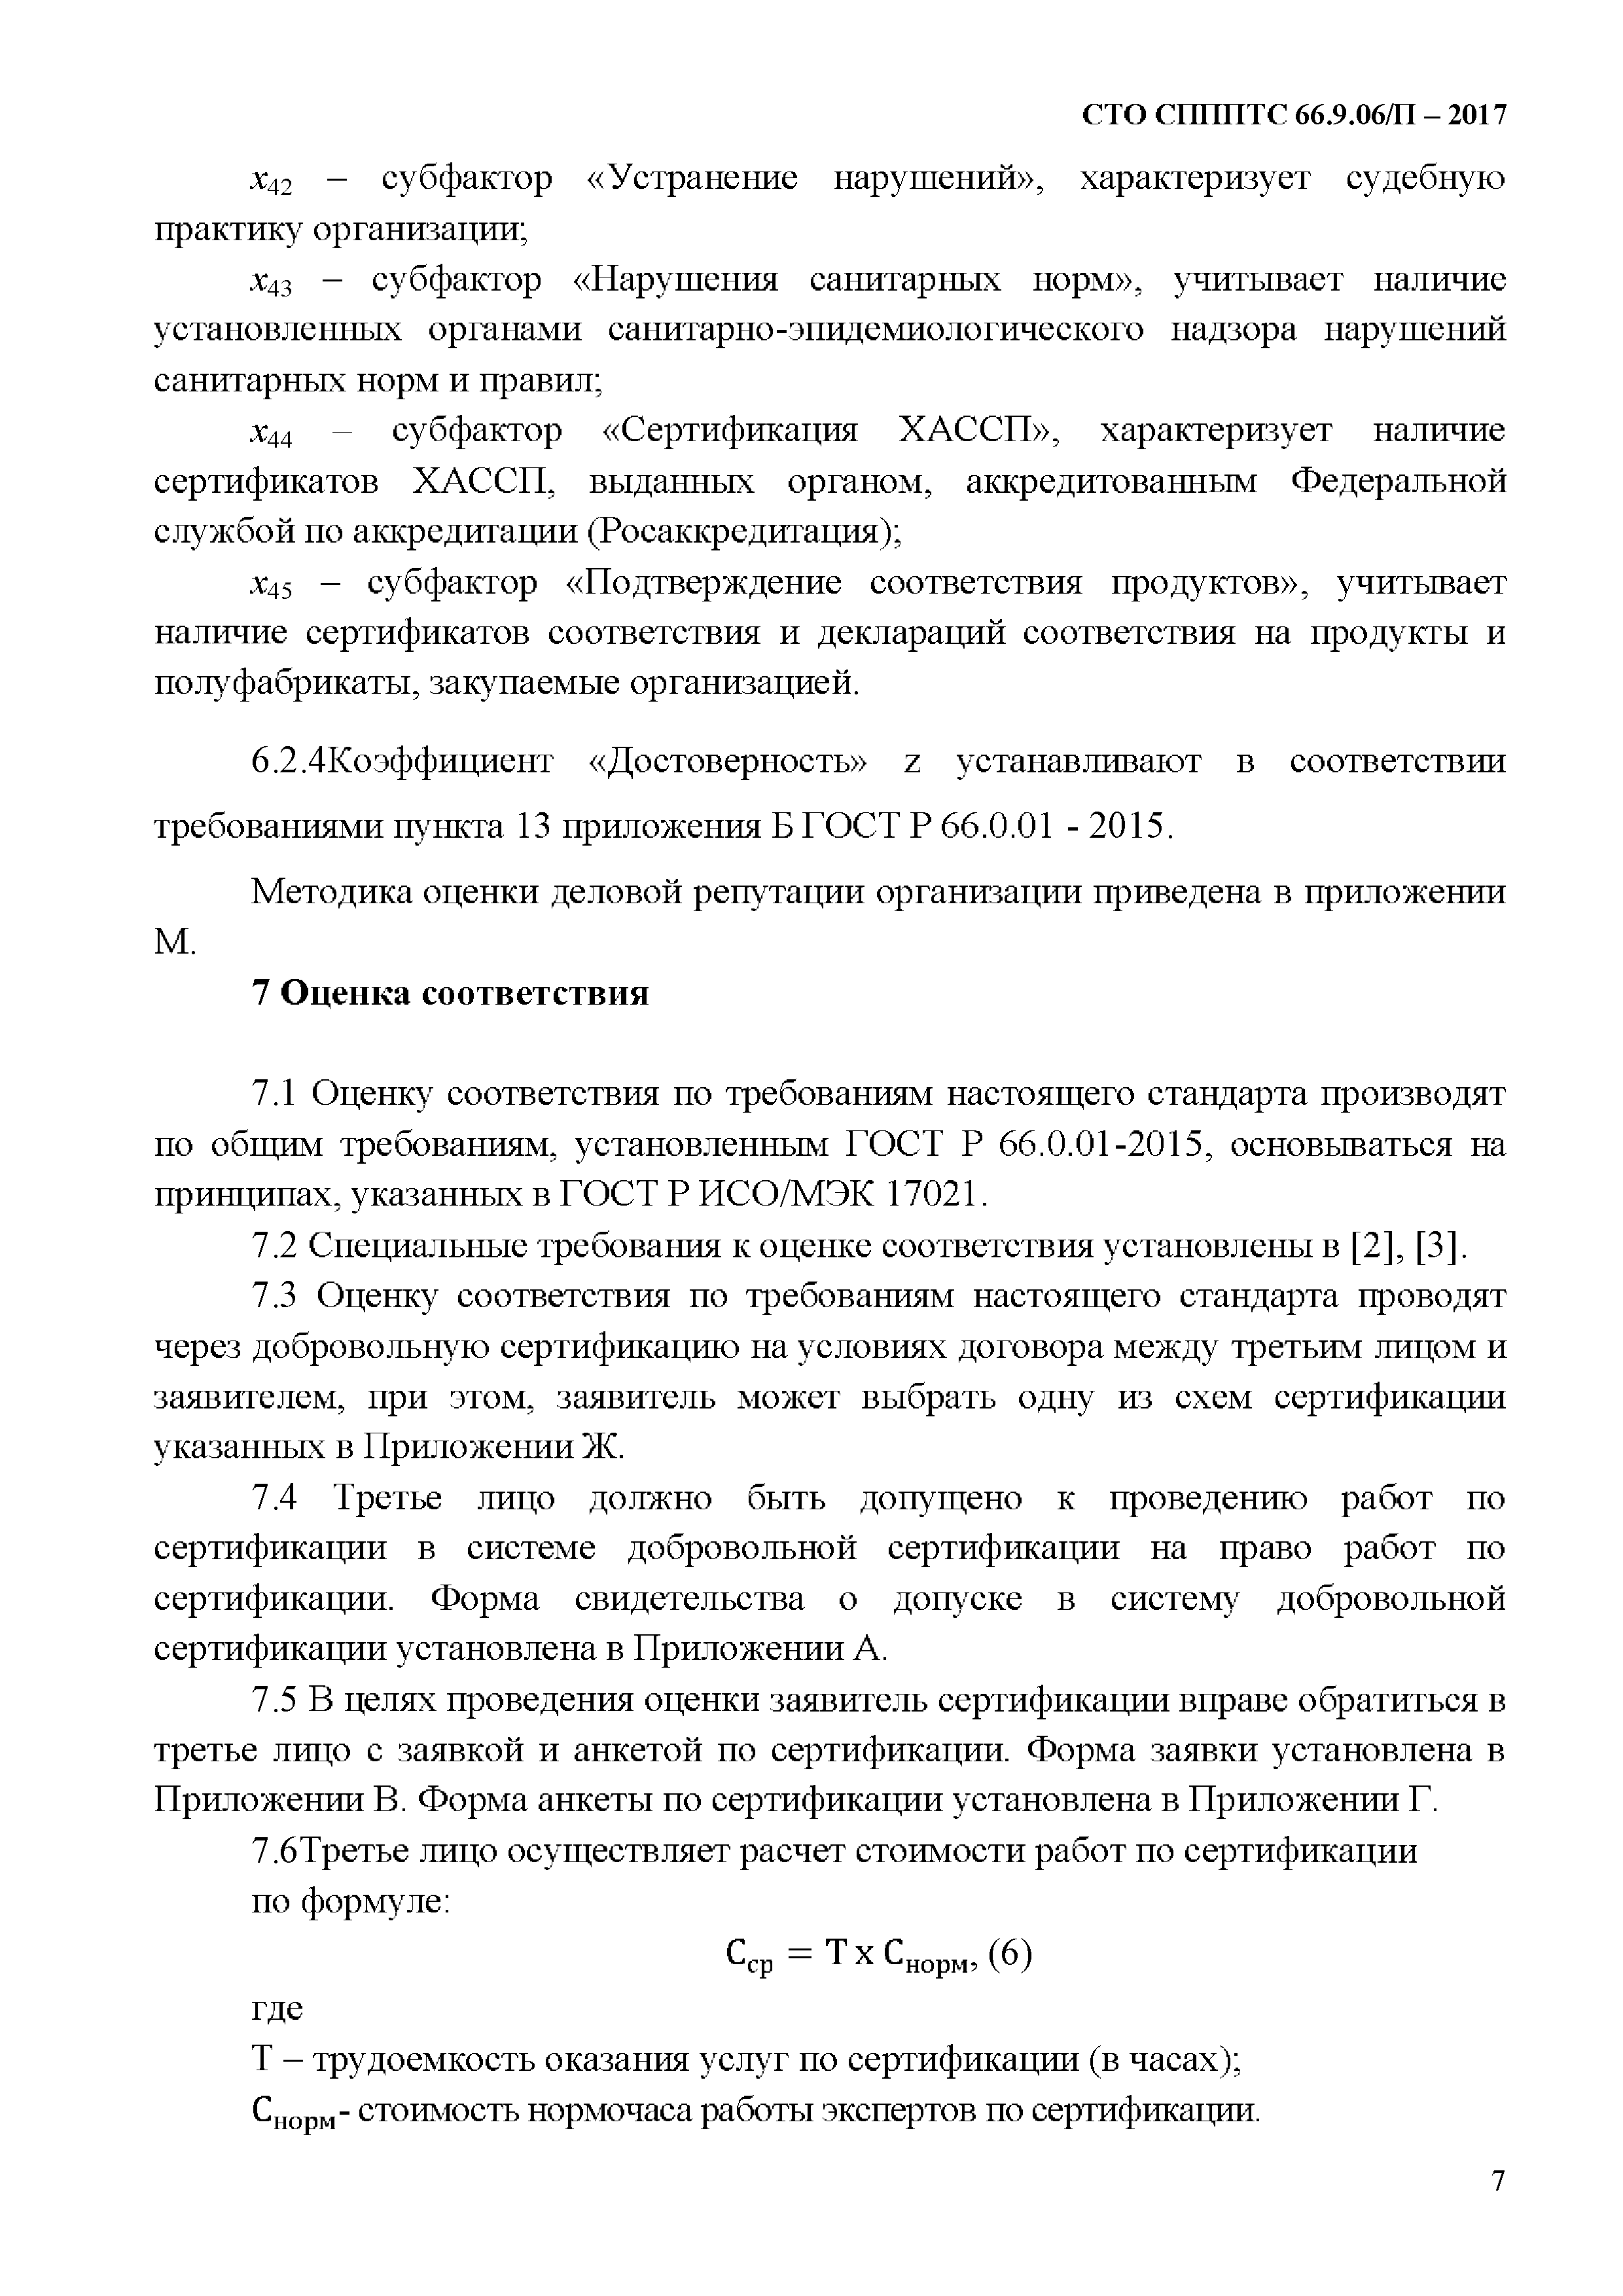 СТО СППП ТС 66.9.06/П-2017